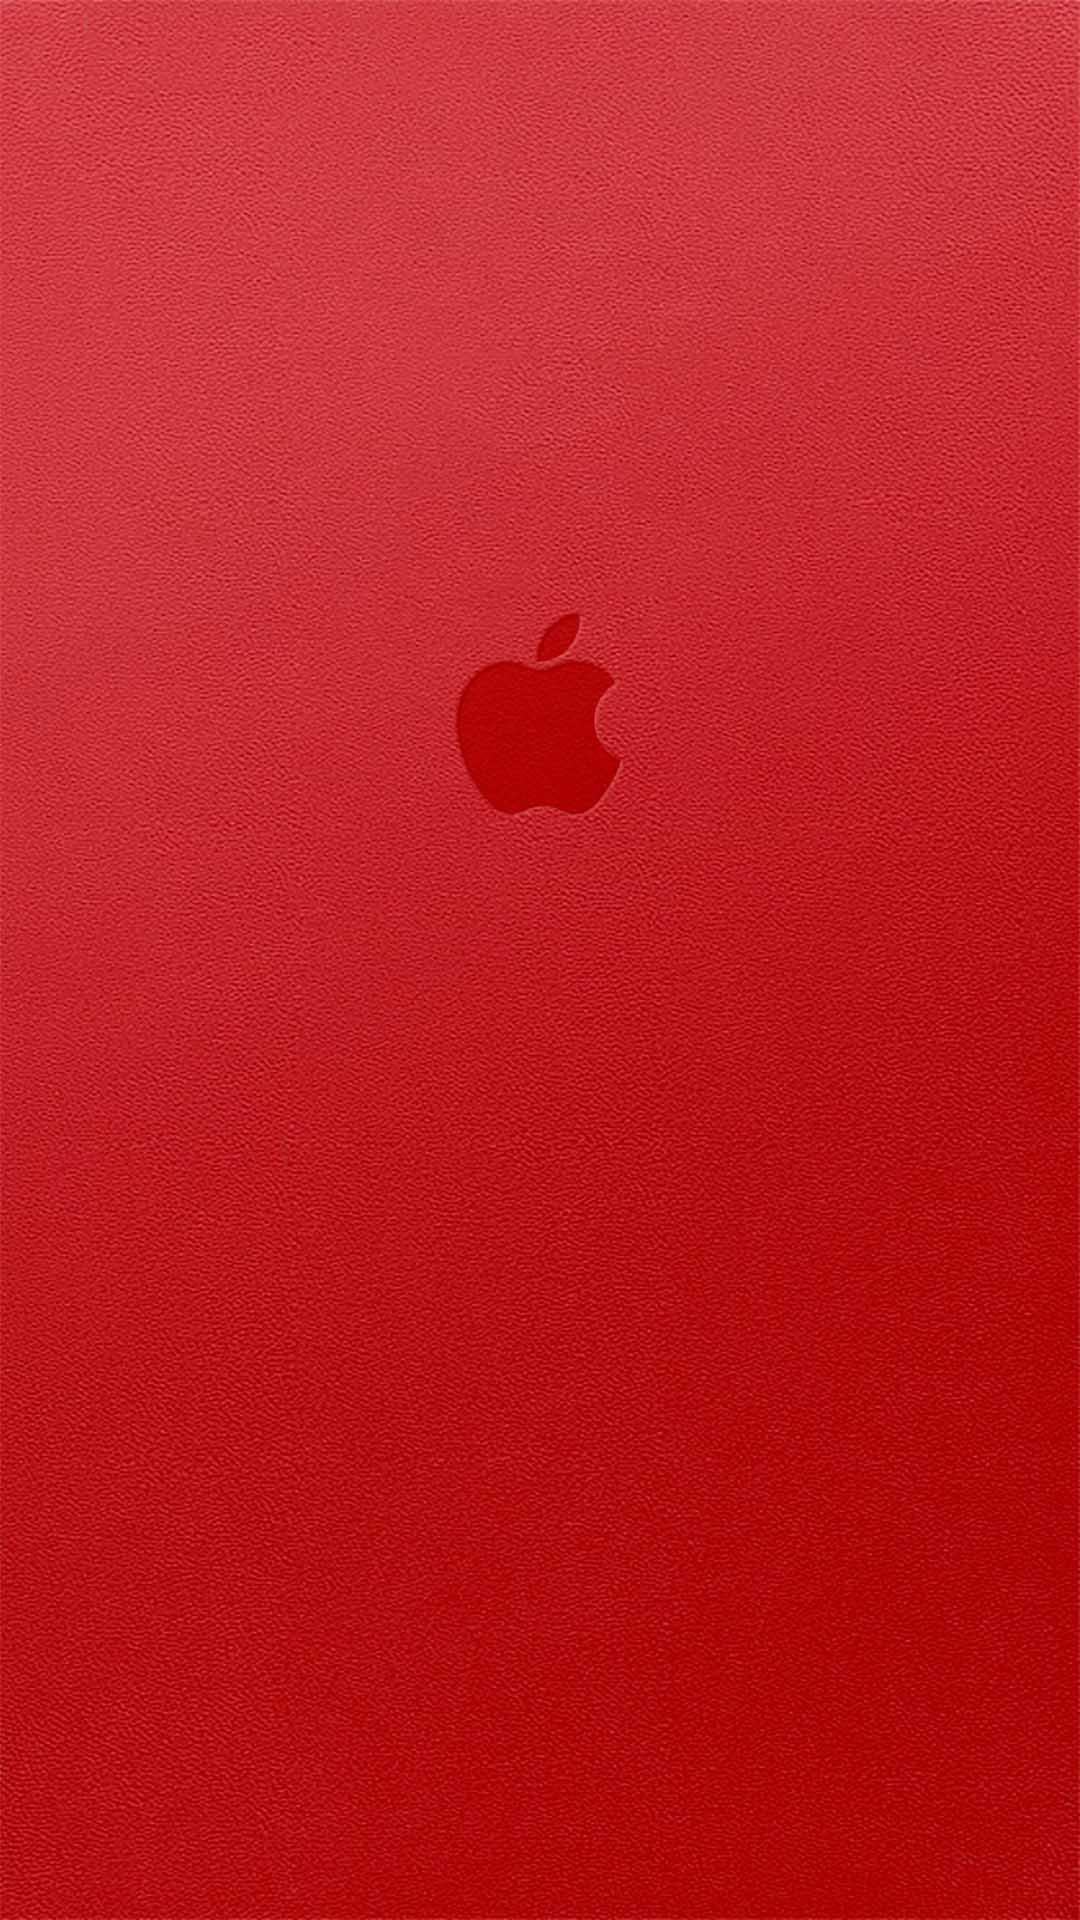 Red シンプルでかっこいいiphone壁紙 Iphone14 スマホ壁紙 待受画像ギャラリー